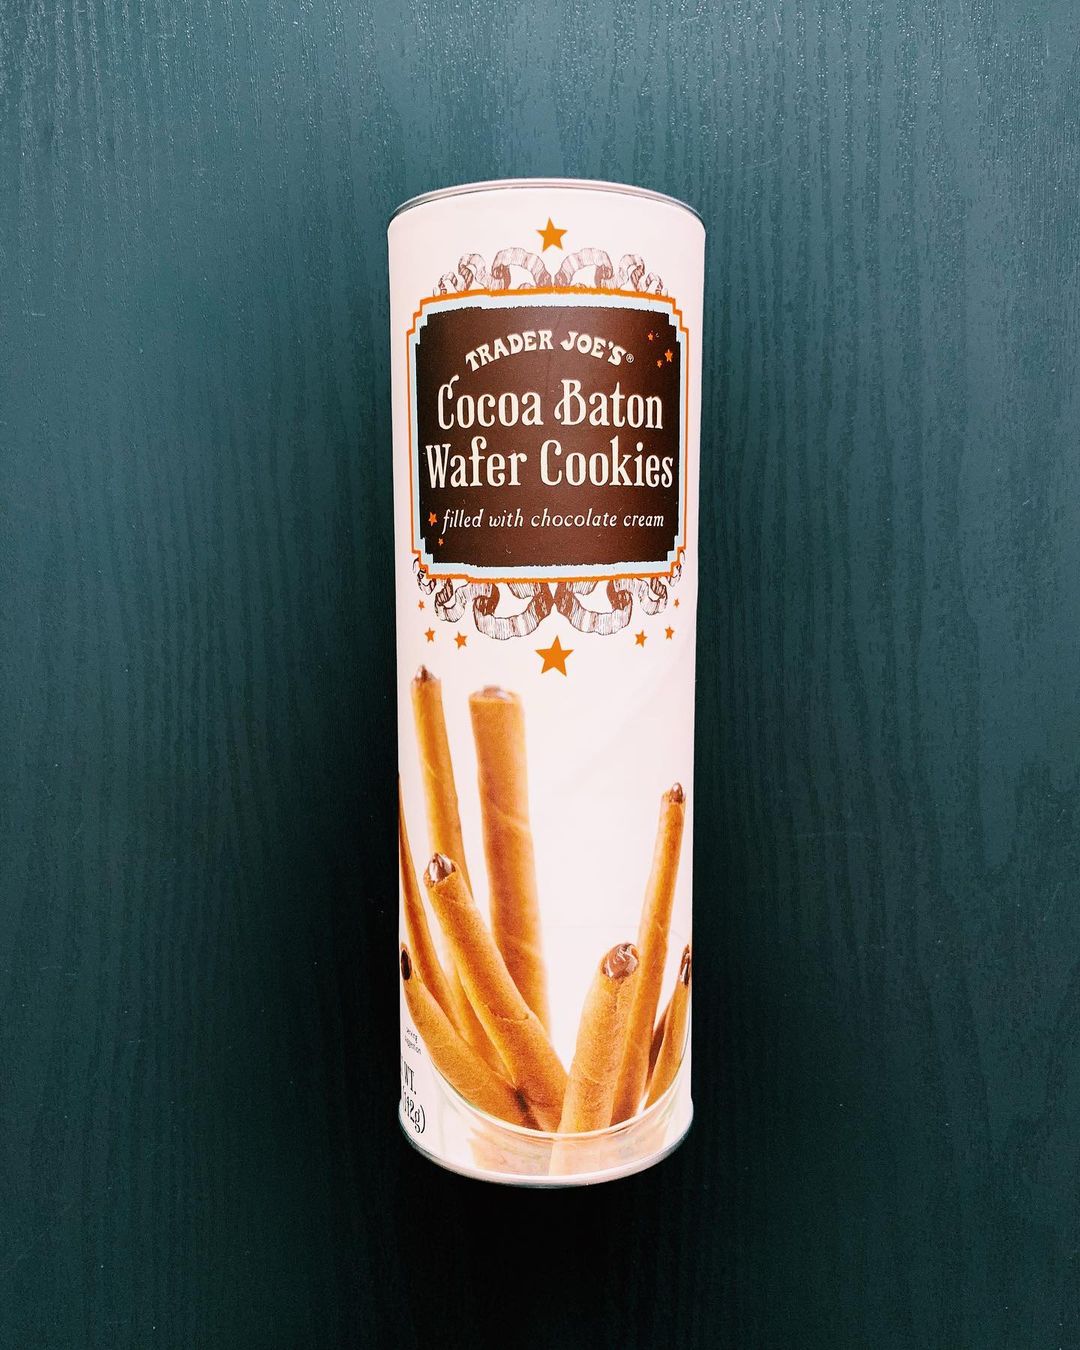 Trader Joe’s Cocoa Baton Wafer Cookies Reviews